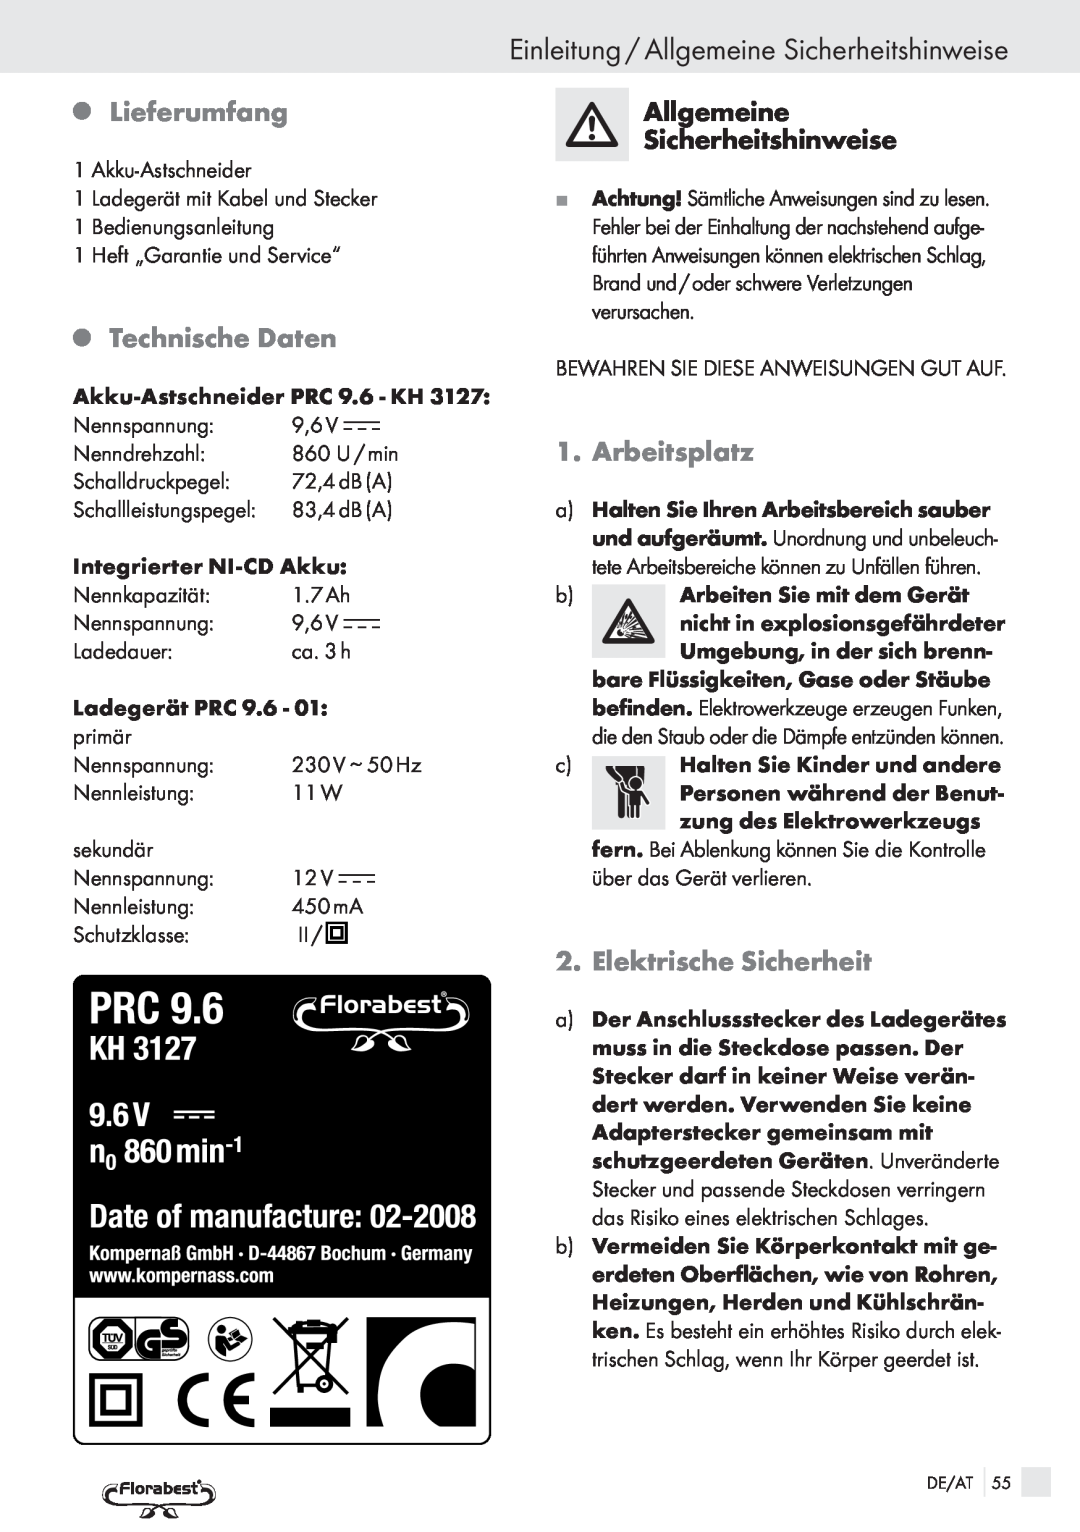 Bench PRC 9.6 manual QLieferumfang, QTechnische Daten, Einleitung / Allgemeine Sicherheitshinweise, Arbeitsplatz 